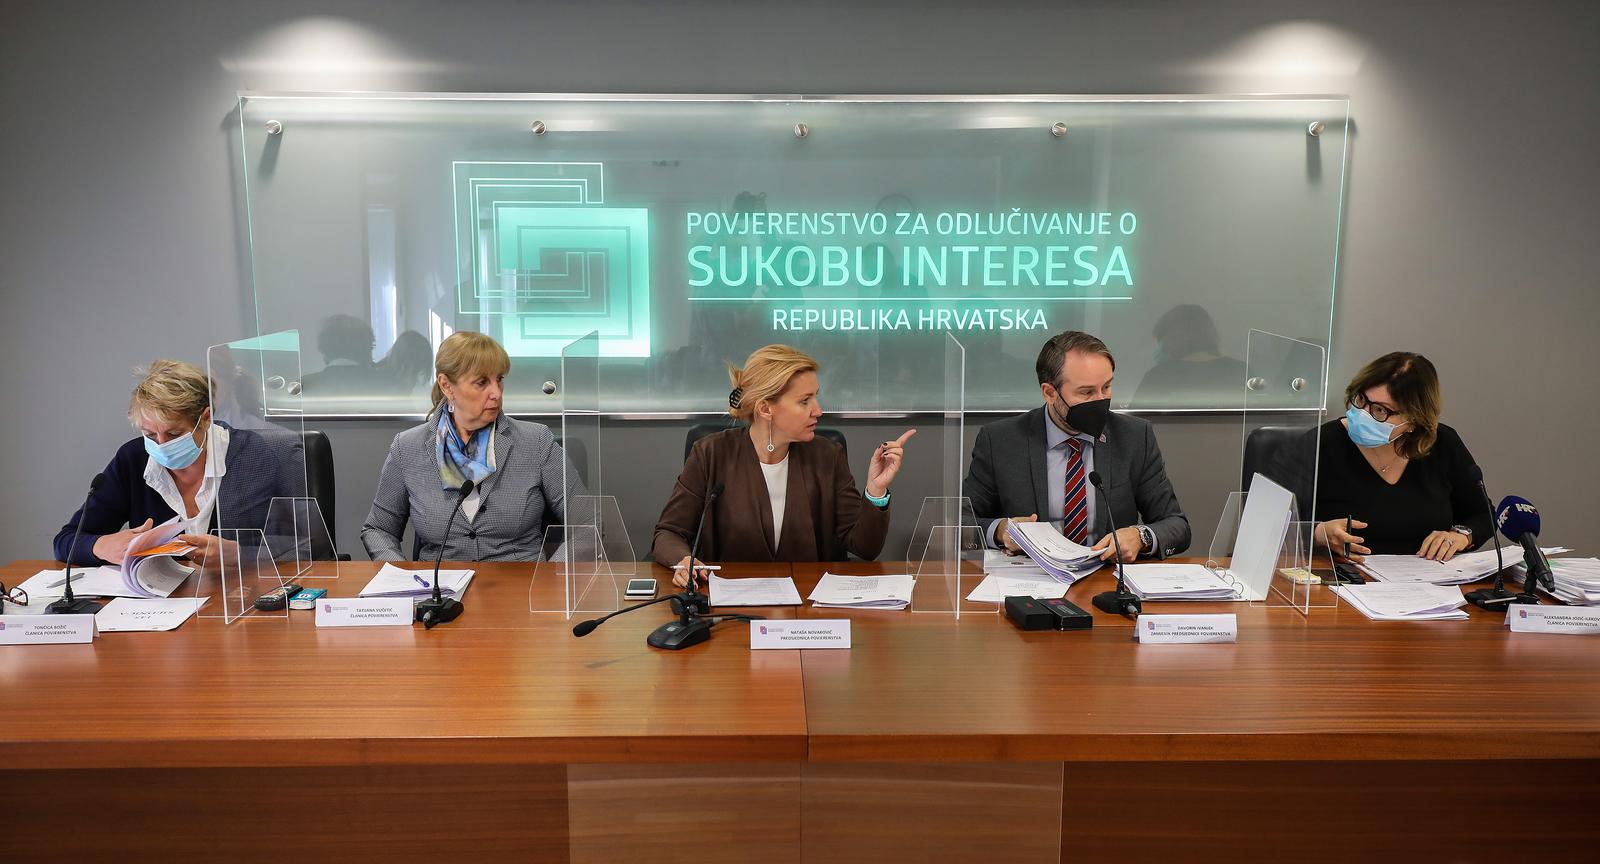 15.10.2021., Zagreb - Sjednica Povjerenstva za odlucivanje o sukobu interesa.